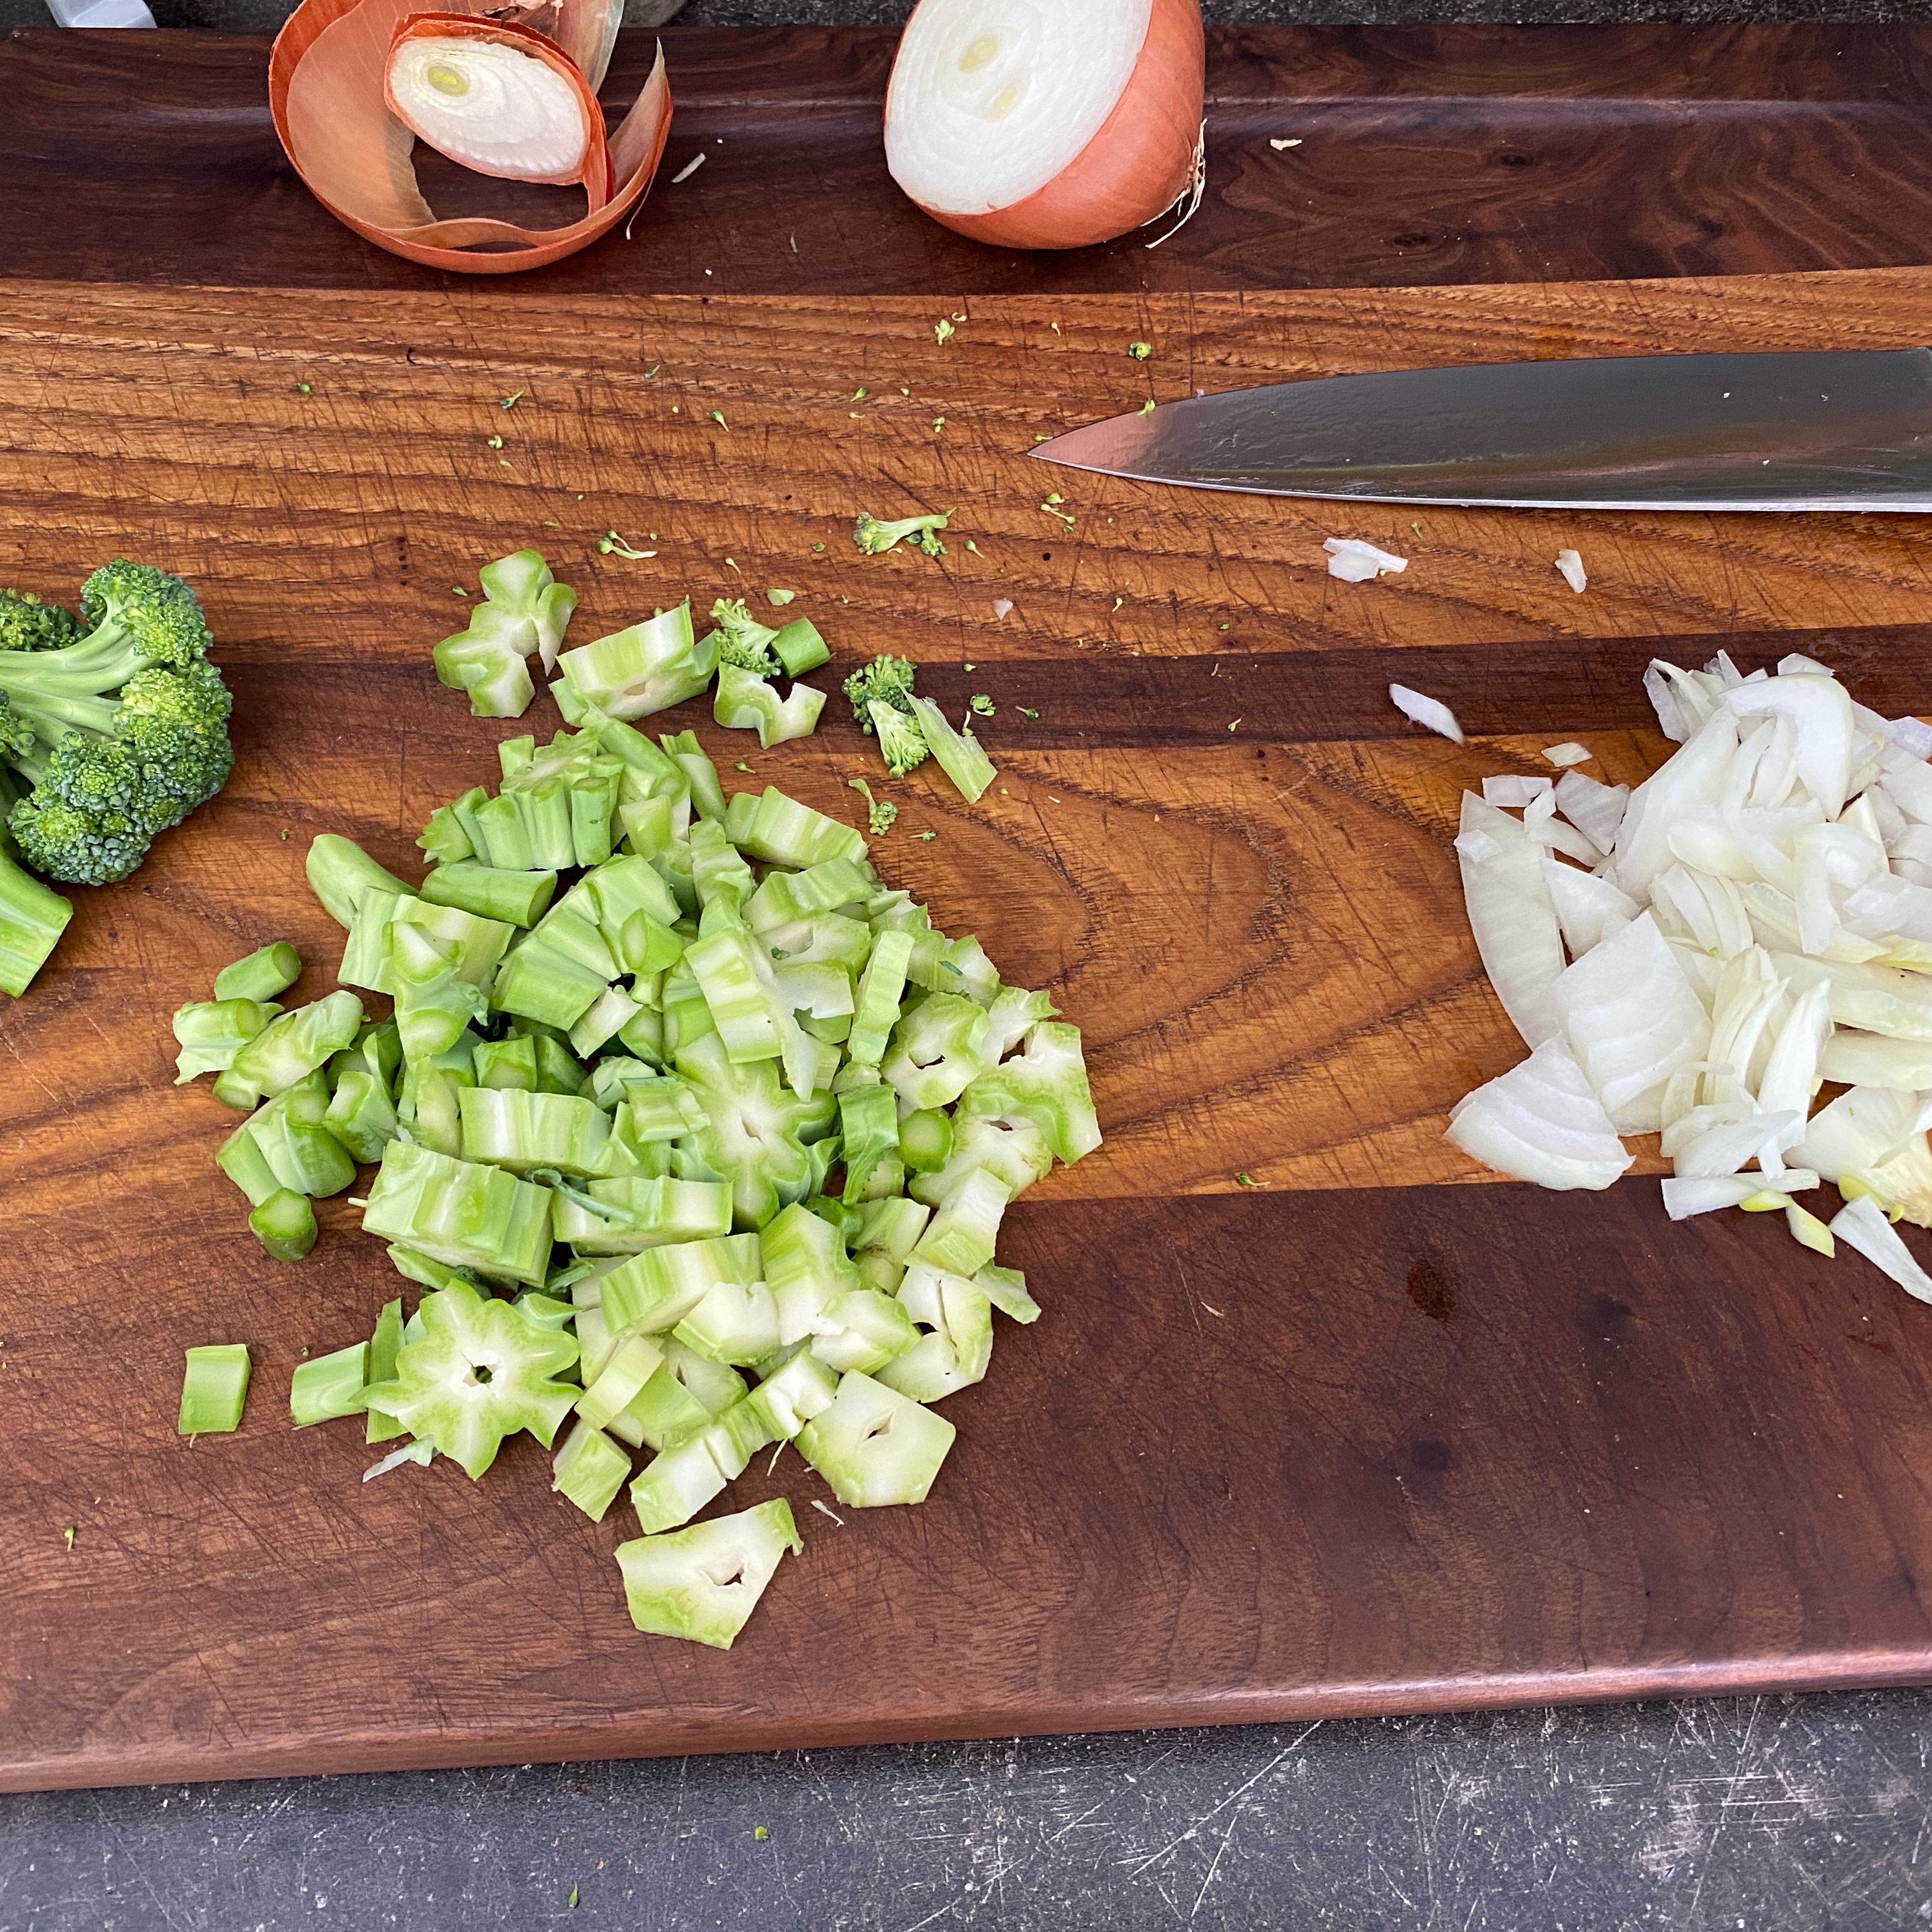 Wir machen diese Suppe immer dann, wenn wir Broccoli als Beilage zum Hauptgang haben möchte. Ich verwende dafür den Stiel, den ich vorher etwas schäle und dann klein schneide. Dann nehme ich eine Zwiebel oder eine halbe Gemüsezwiebel und schneide sie ebenfalls in grobe Würfel. Anschließend gebe ich das Rapsöl in einen Topf und schwitze den Broccolistiel und die Zwiebeln darin circa 3-5 Minuten an .￼￼